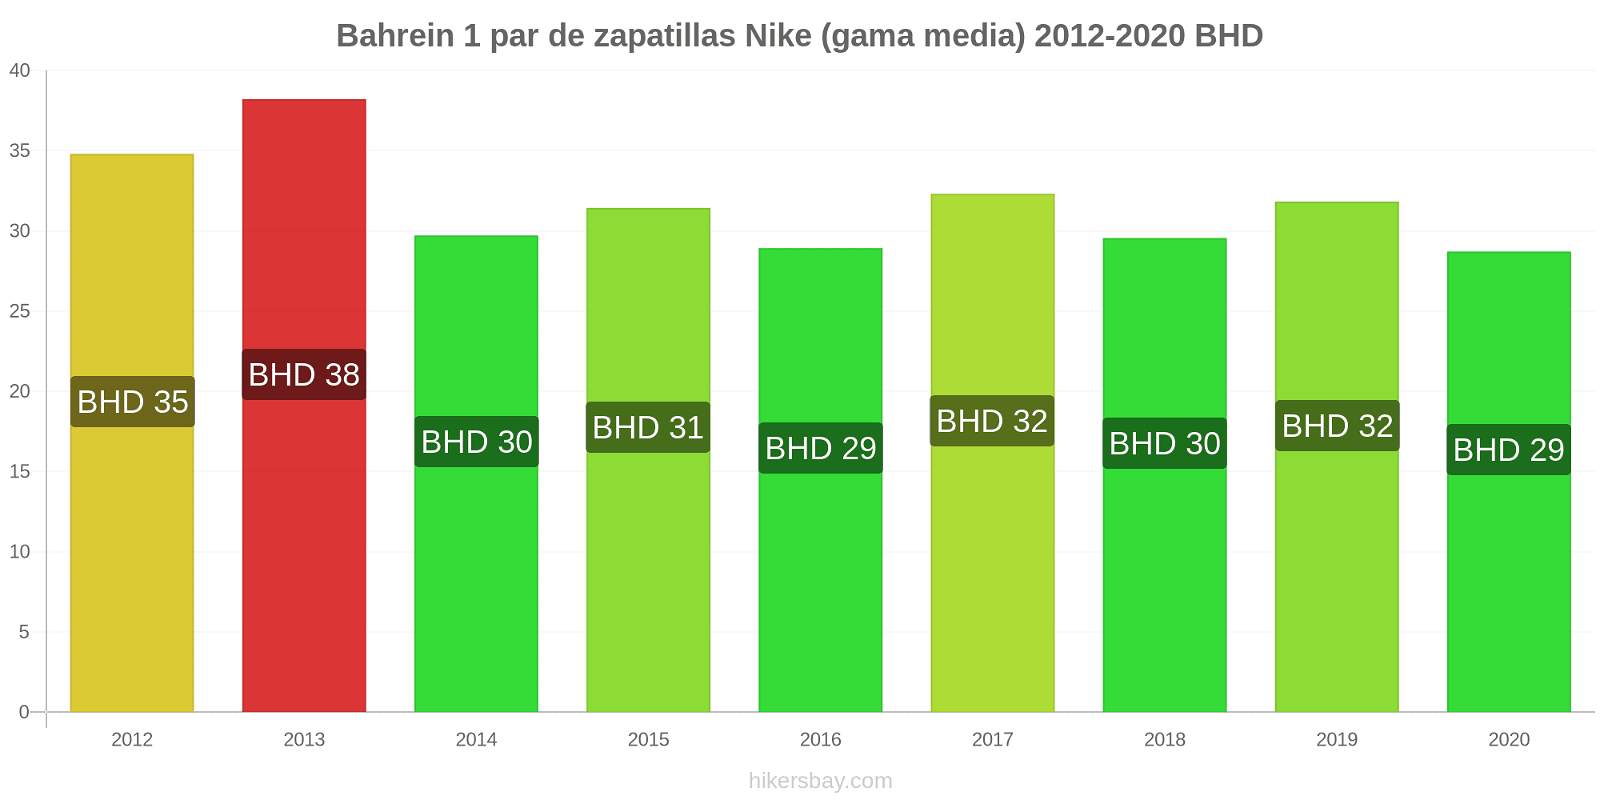 Bahrein cambios de precios 1 par de zapatillas Nike (gama media) hikersbay.com